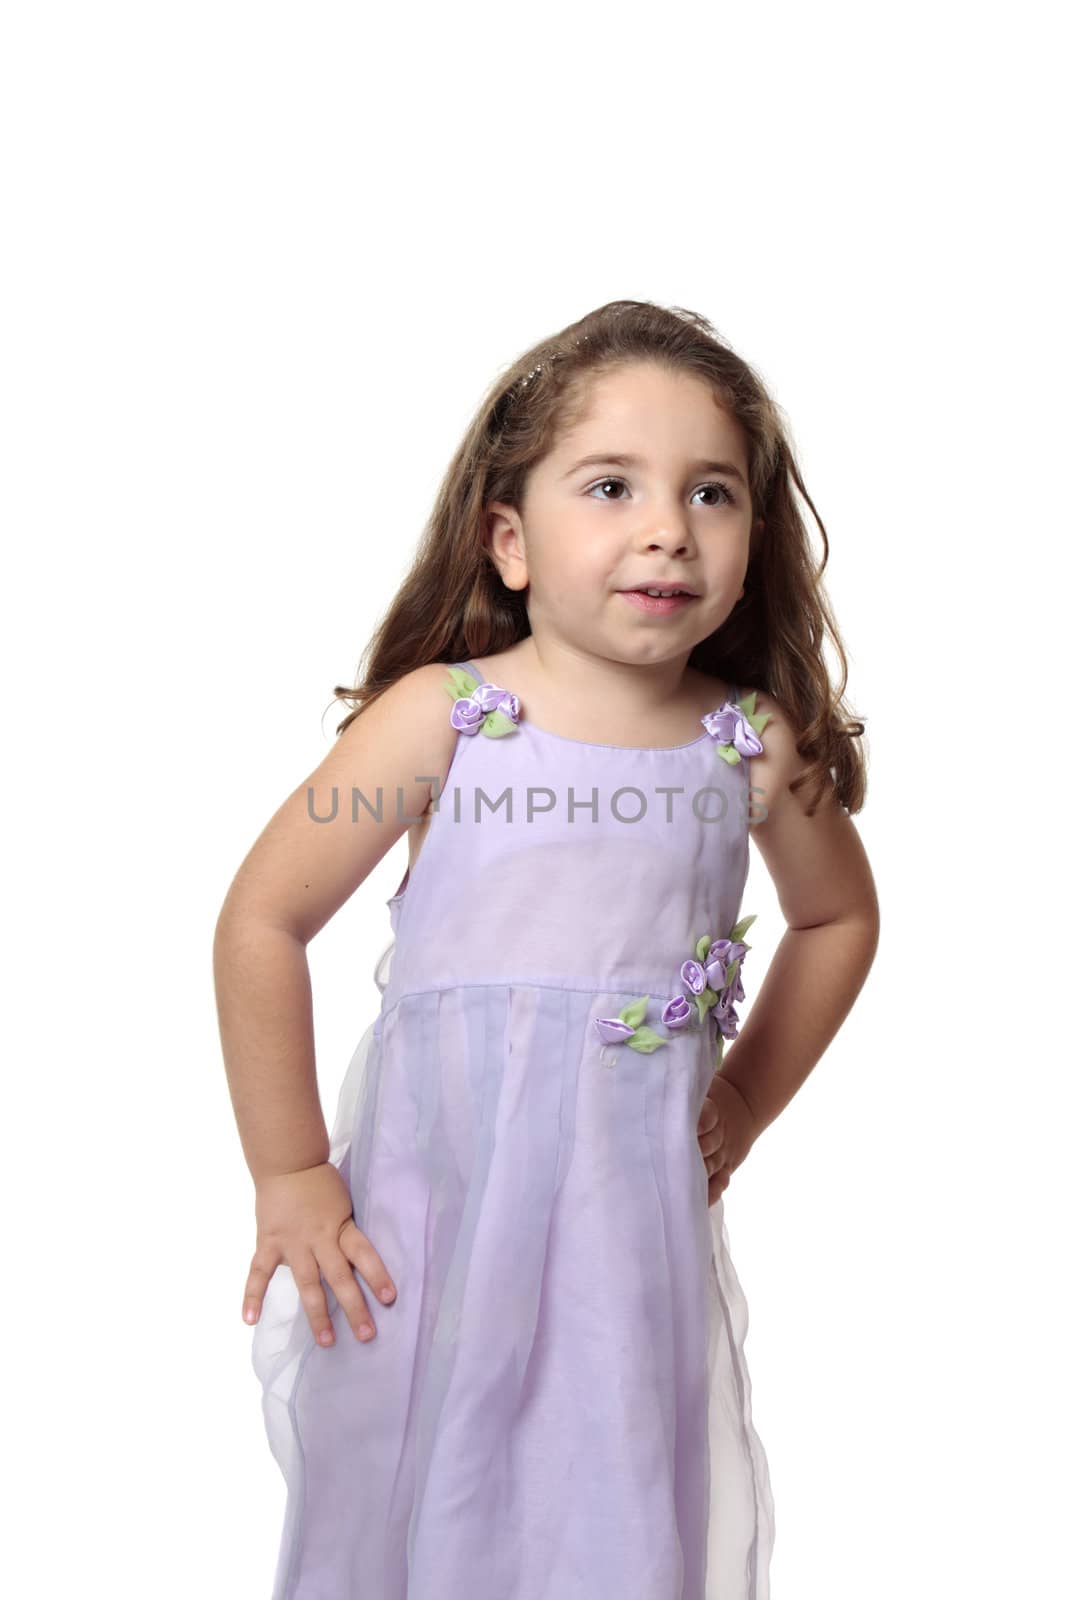 Beautiful little girl in pretty dress by lovleah